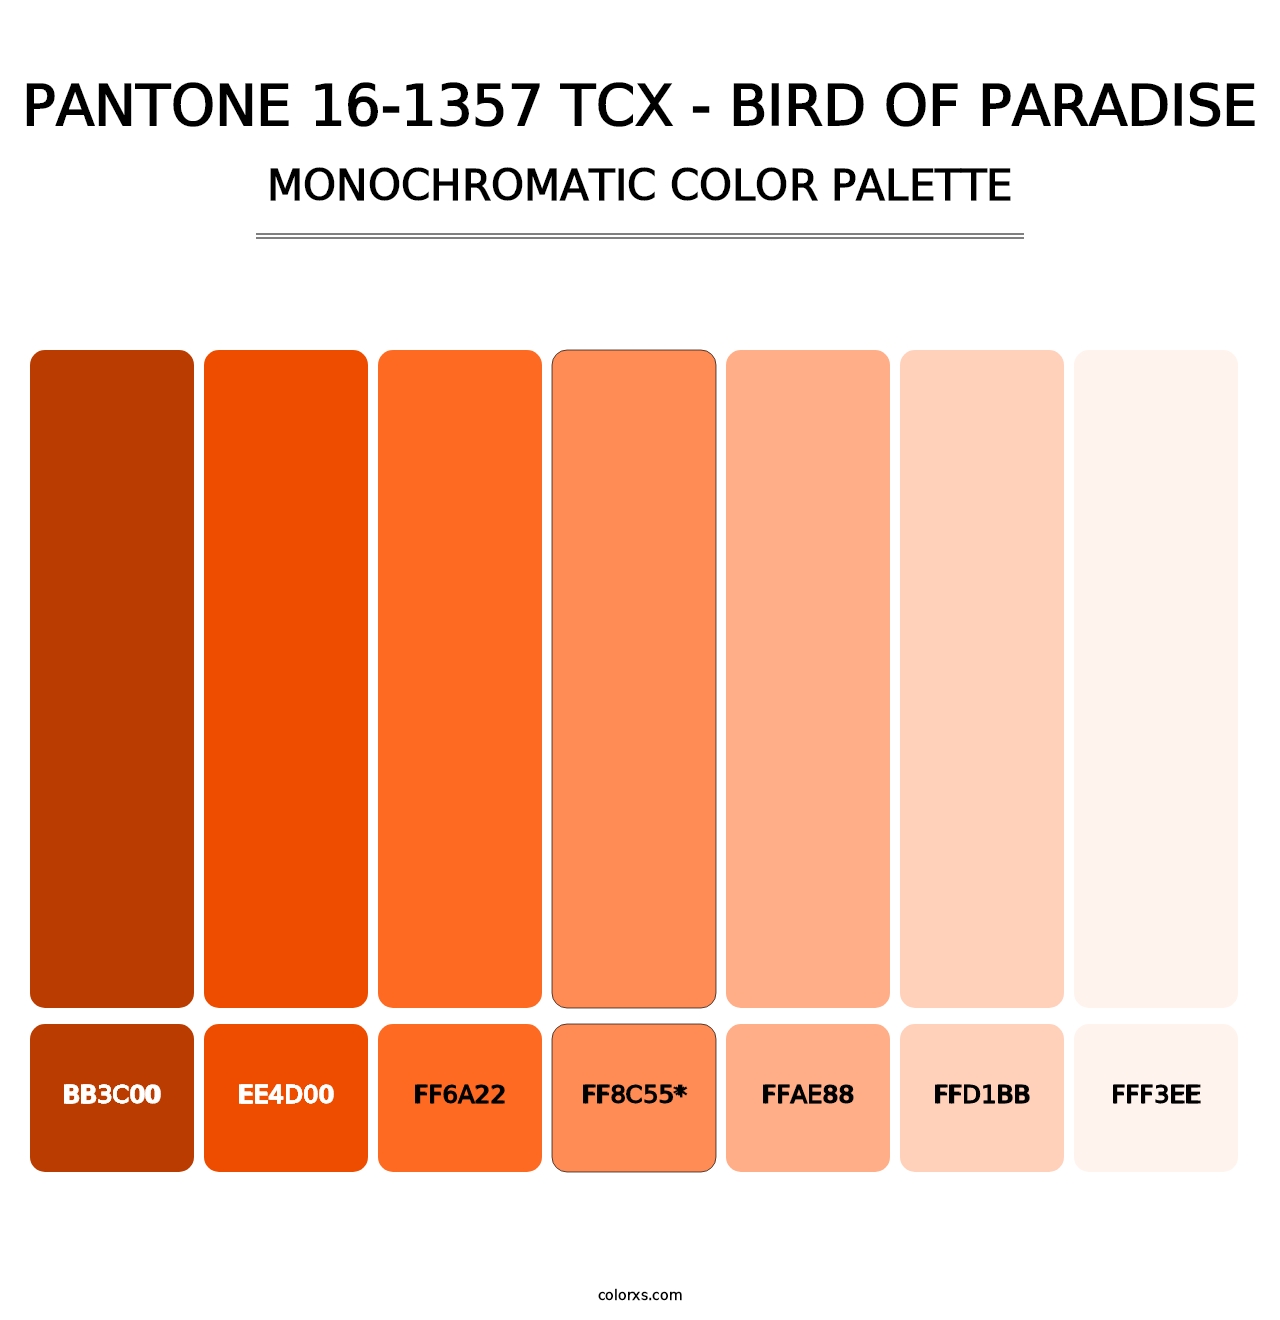 PANTONE 16-1357 TCX - Bird of Paradise - Monochromatic Color Palette